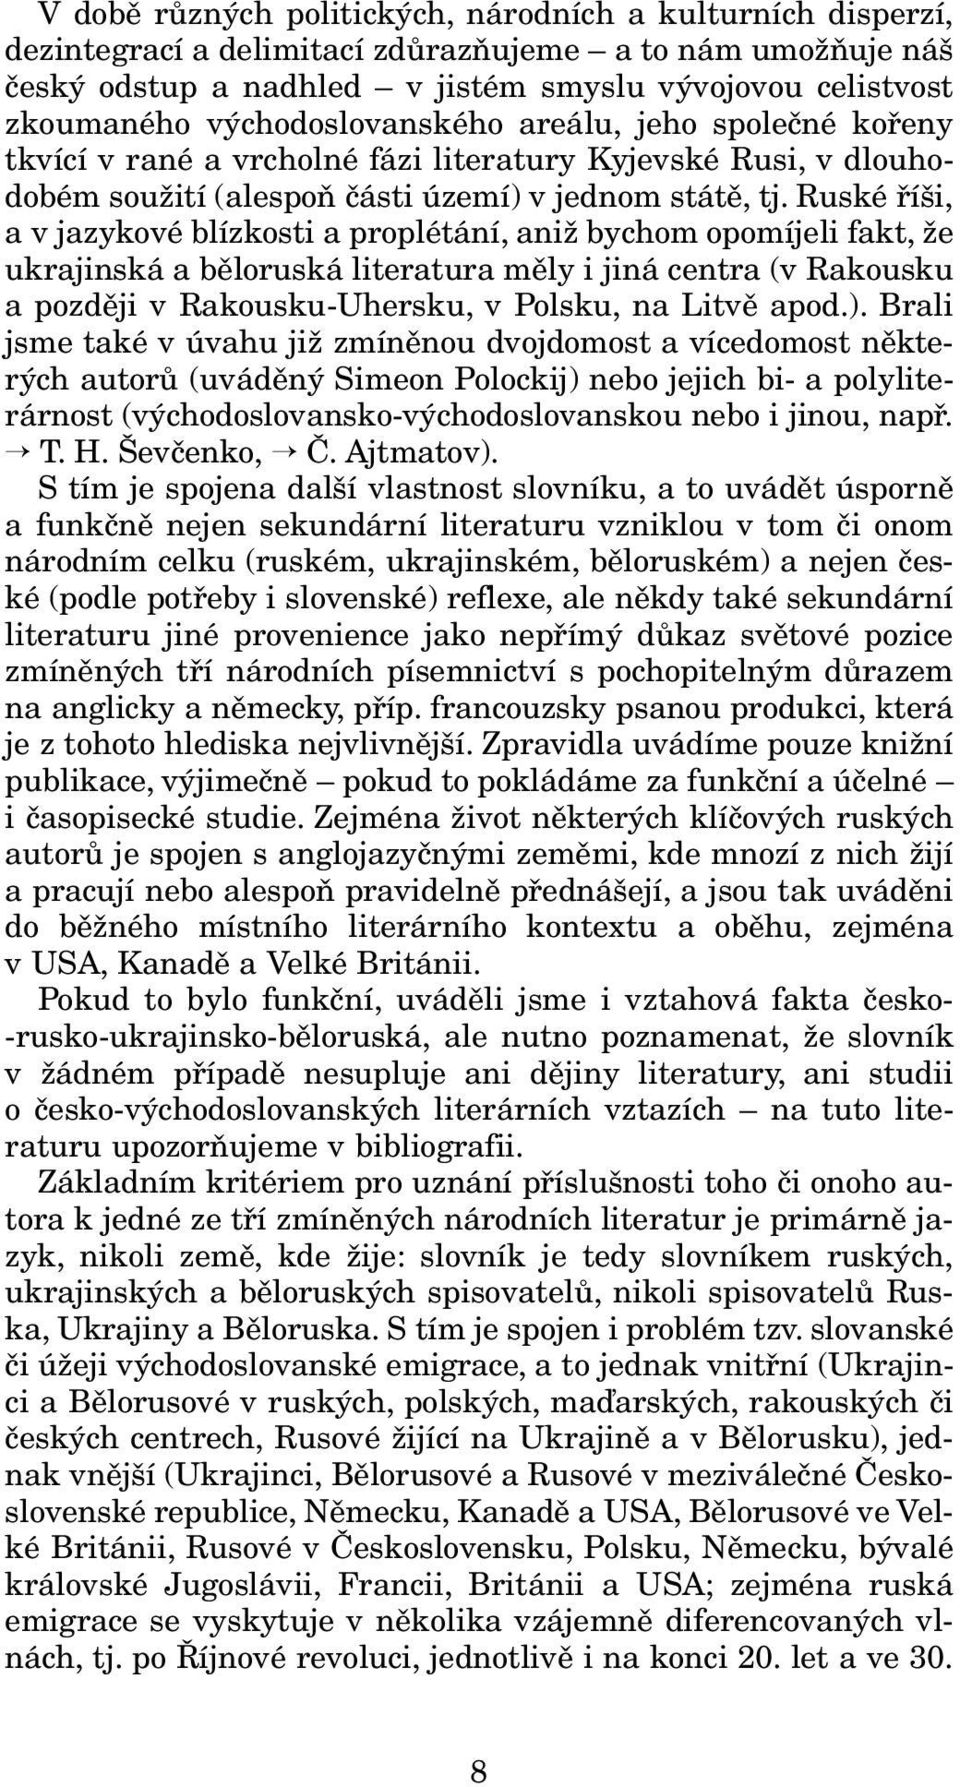 Ruské říši, a v jazykové blízkosti a proplétání, aniž bychom opomíjeli fakt, že ukrajinská a běloruská literatura měly i jiná centra (v Rakousku a později v Rakousku-Uhersku, v Polsku, na Litvě apod.